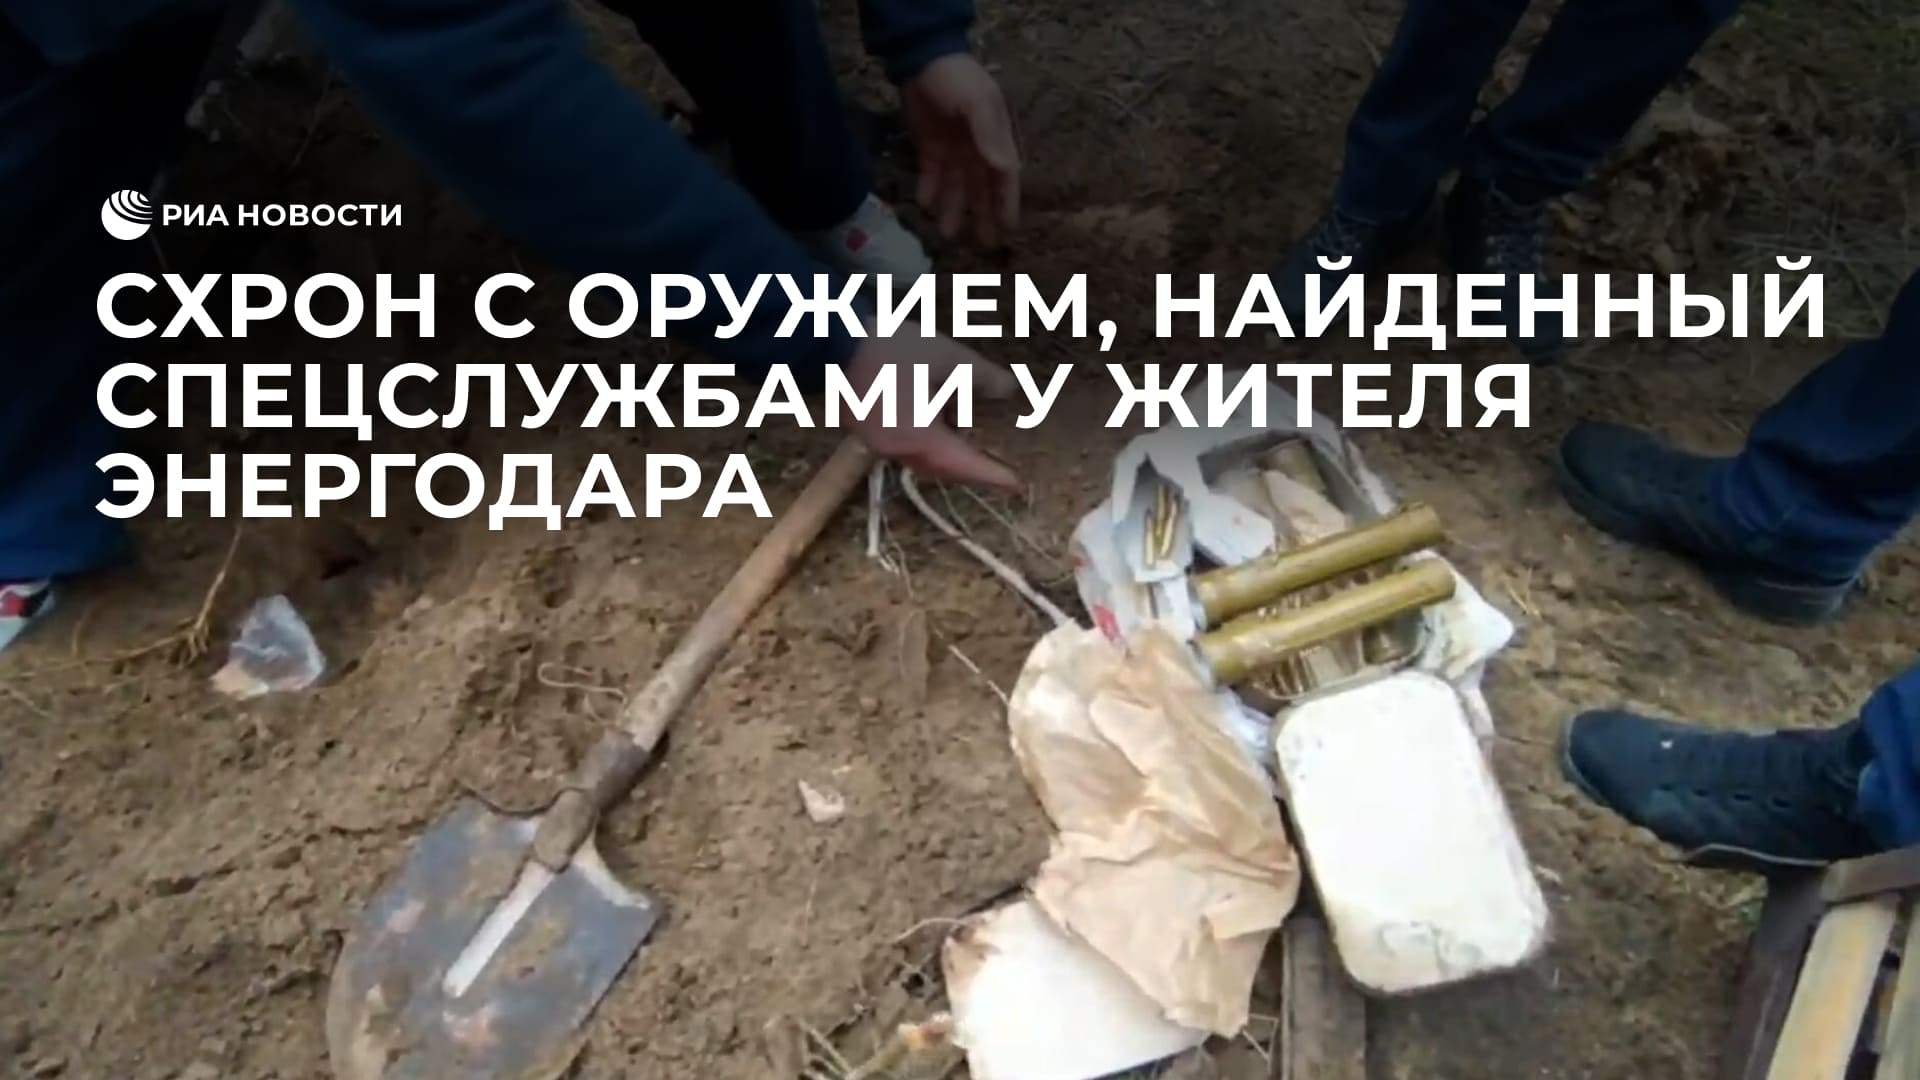 Схрон с оружием, найденный российскими спецслужбами у жителя Энергодара